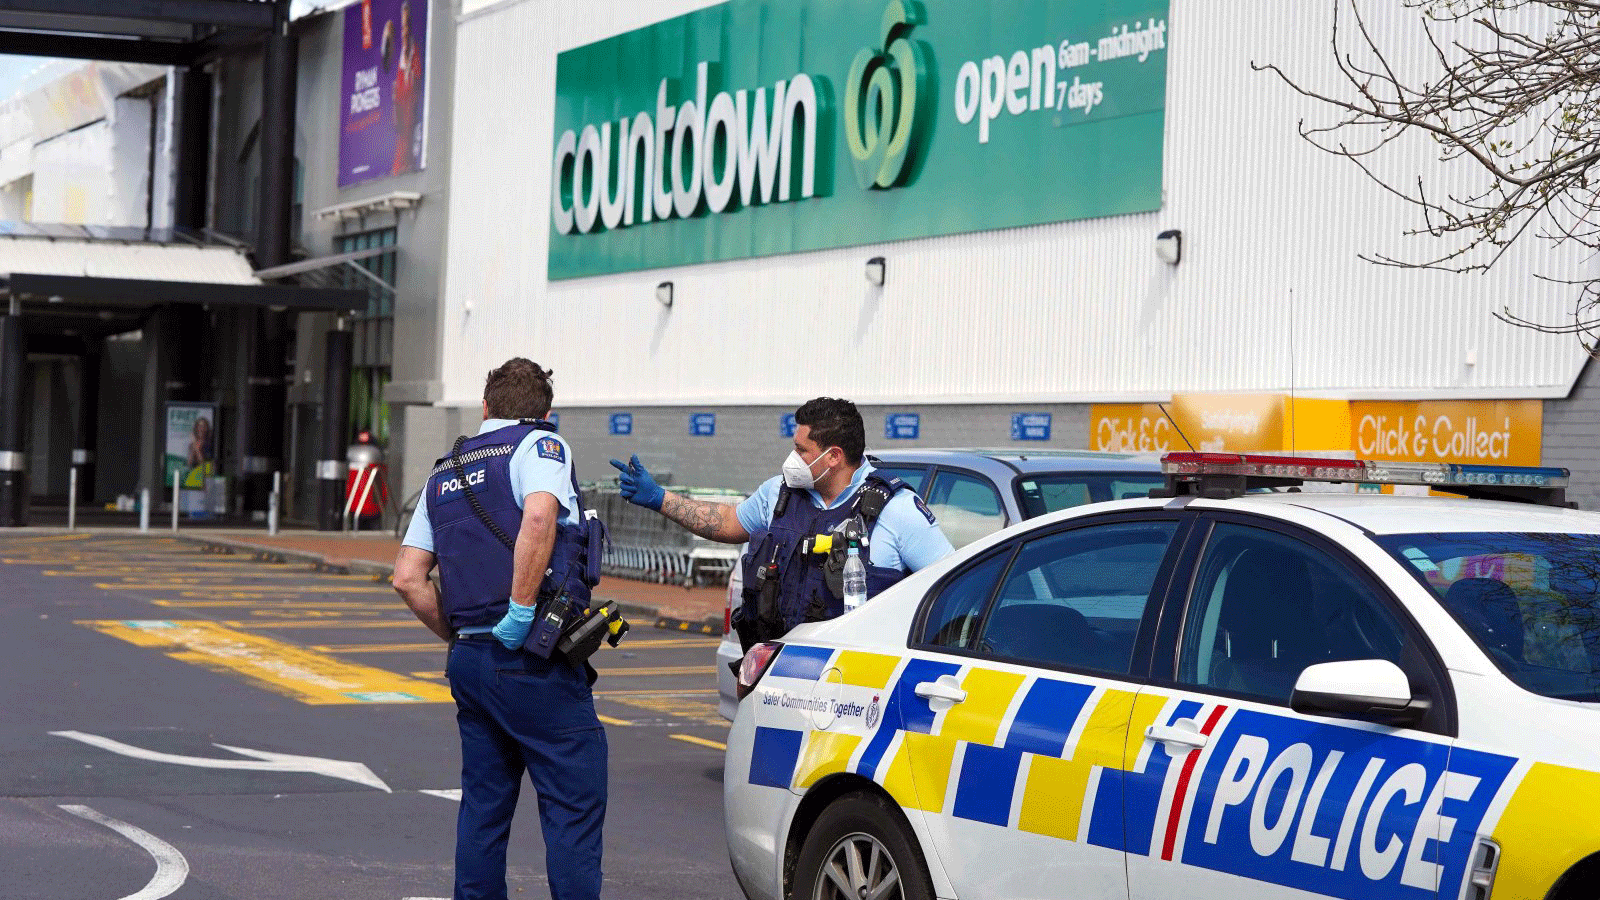 الشرطة خارج سوبر ماركت كونت داون في لين مول في أوكلاند/ نيوزيلندا 4 أيلول/ سبتمبر 2021